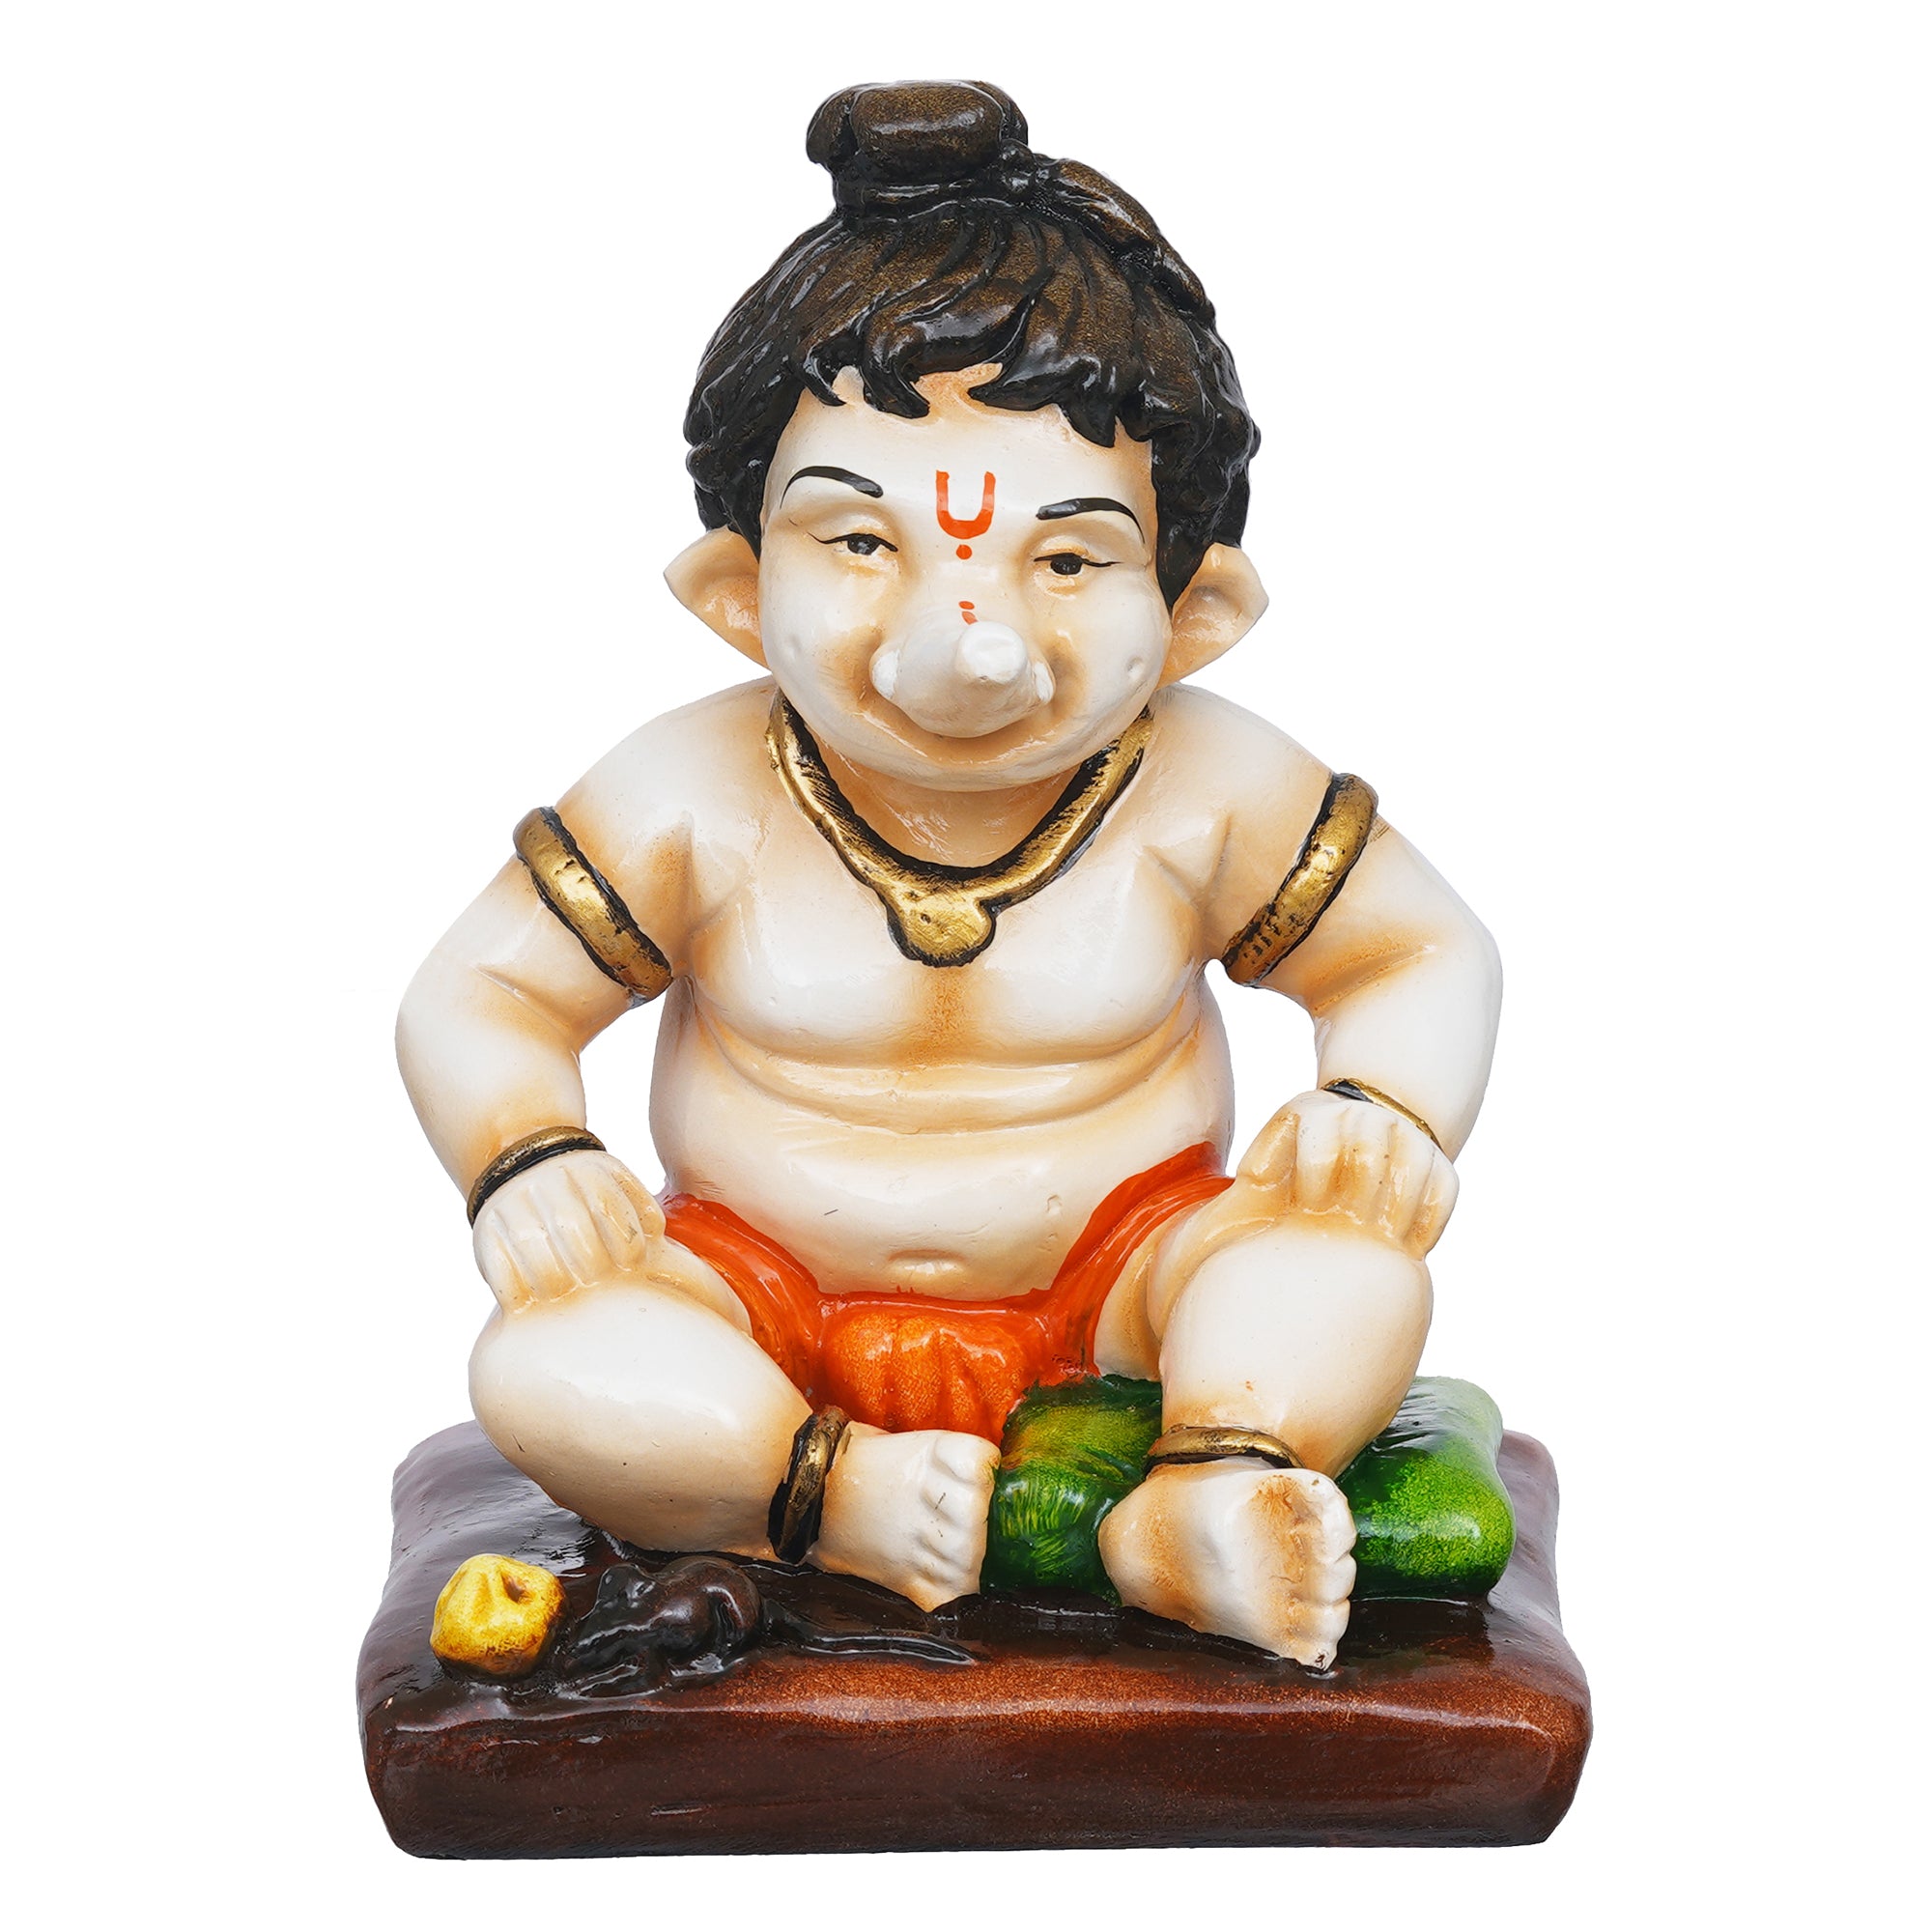 eCraftIndia Multicolor Polyresin Handcrafted Sitting Lord Ganesha Idol 2